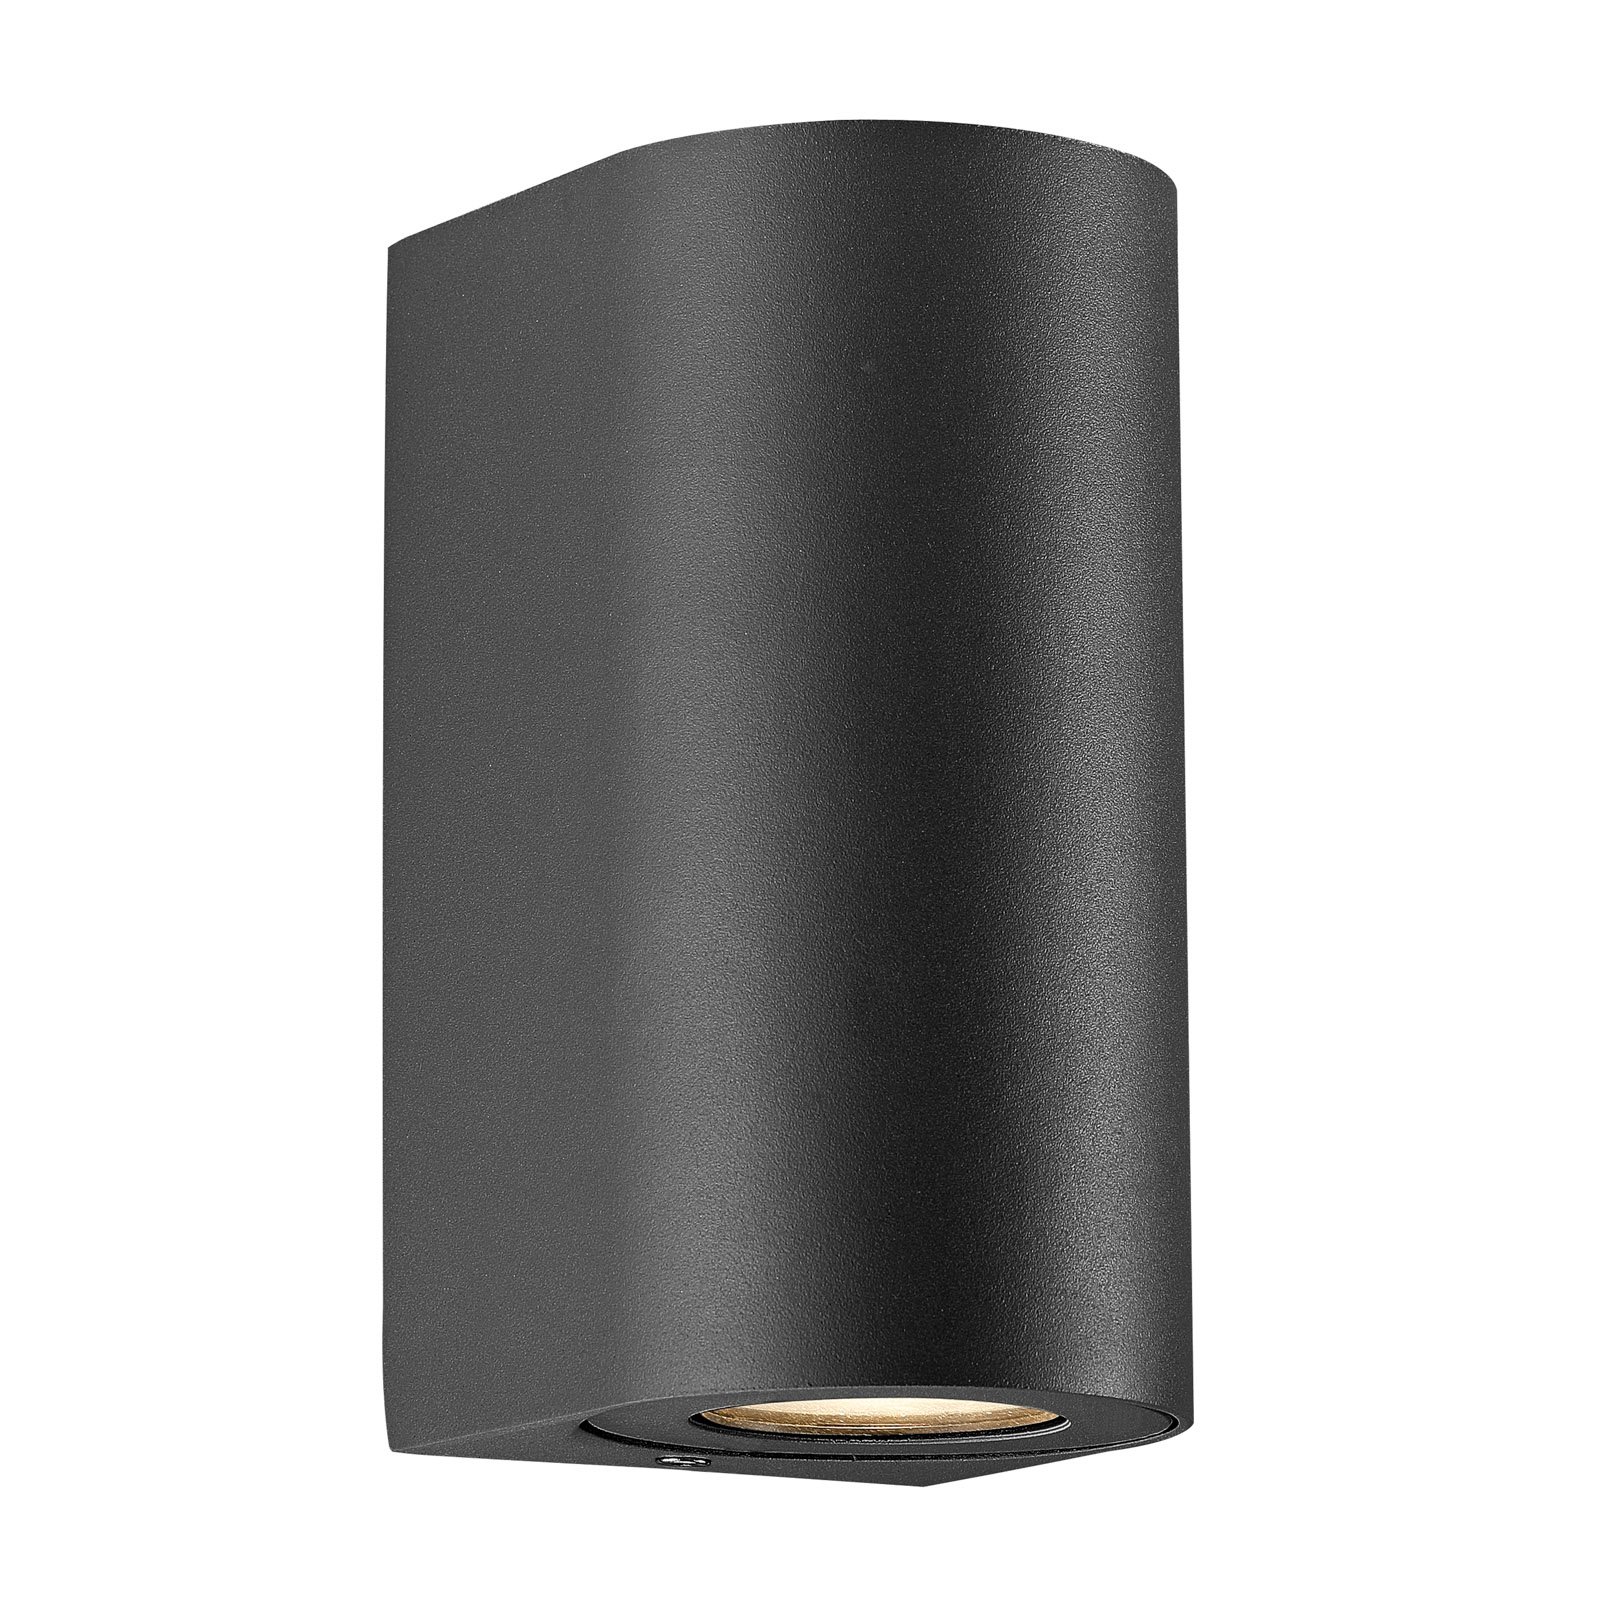 Canto Maxi 2 Seaside outdoor wall light, black, GU10, 17 cm